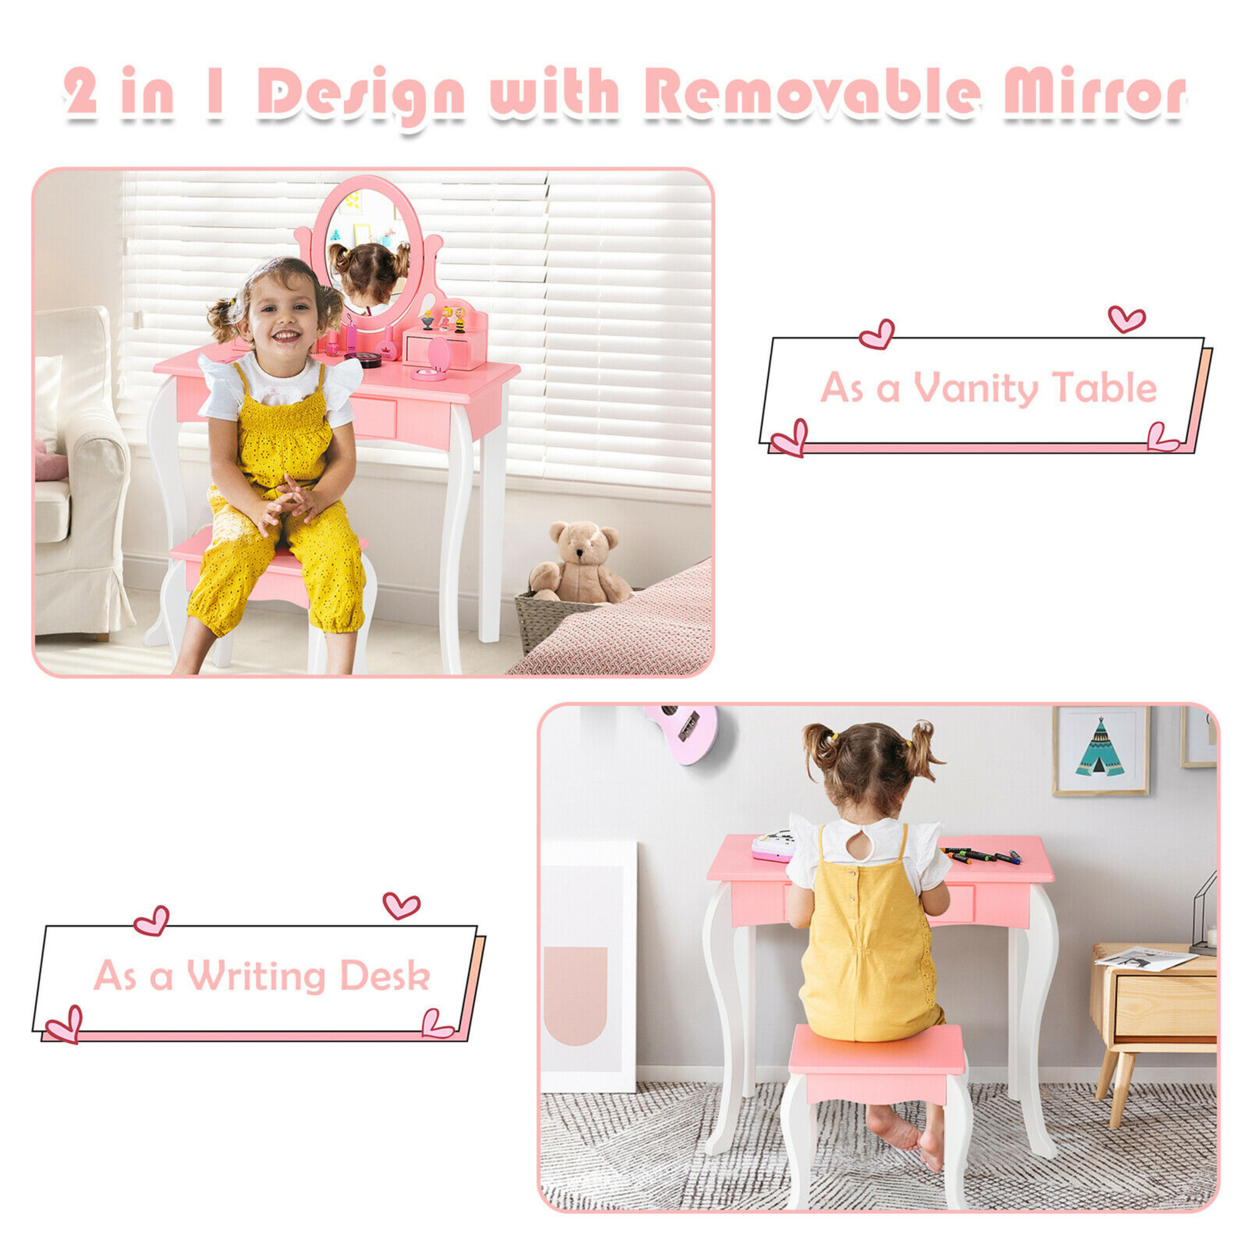 Kids Vanity Princess Makeup Dressing Table Stool Set W/ Mirror Drawer - Pink